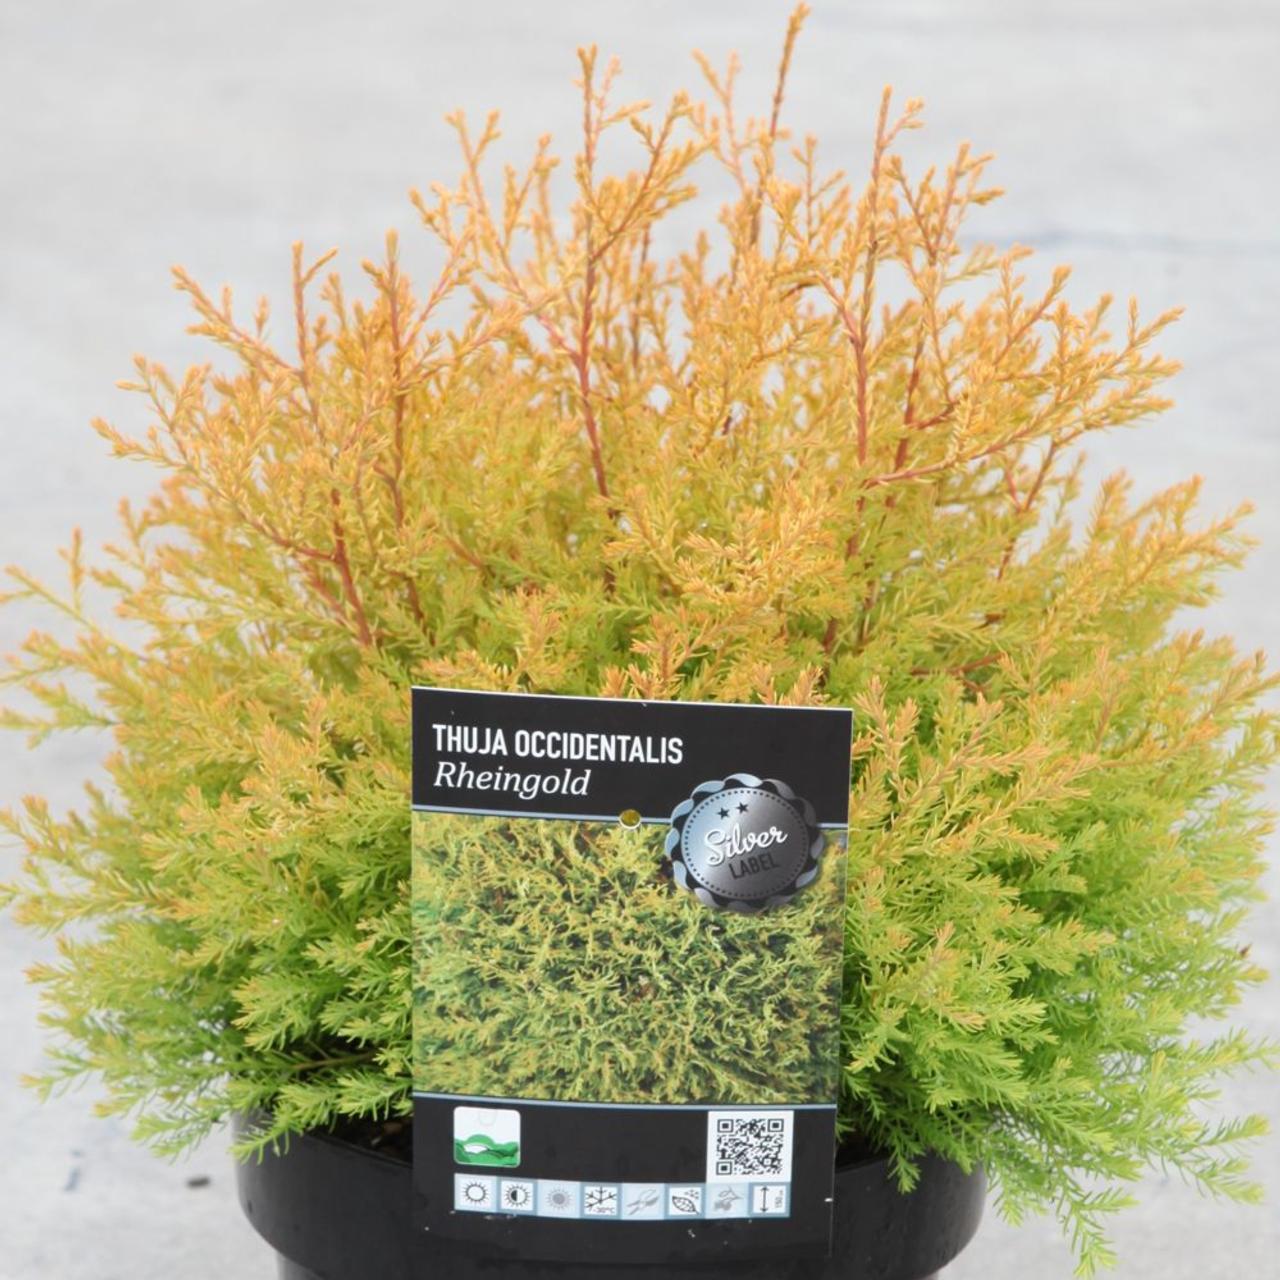 Thuja occidentalis 'Rheingold' plant